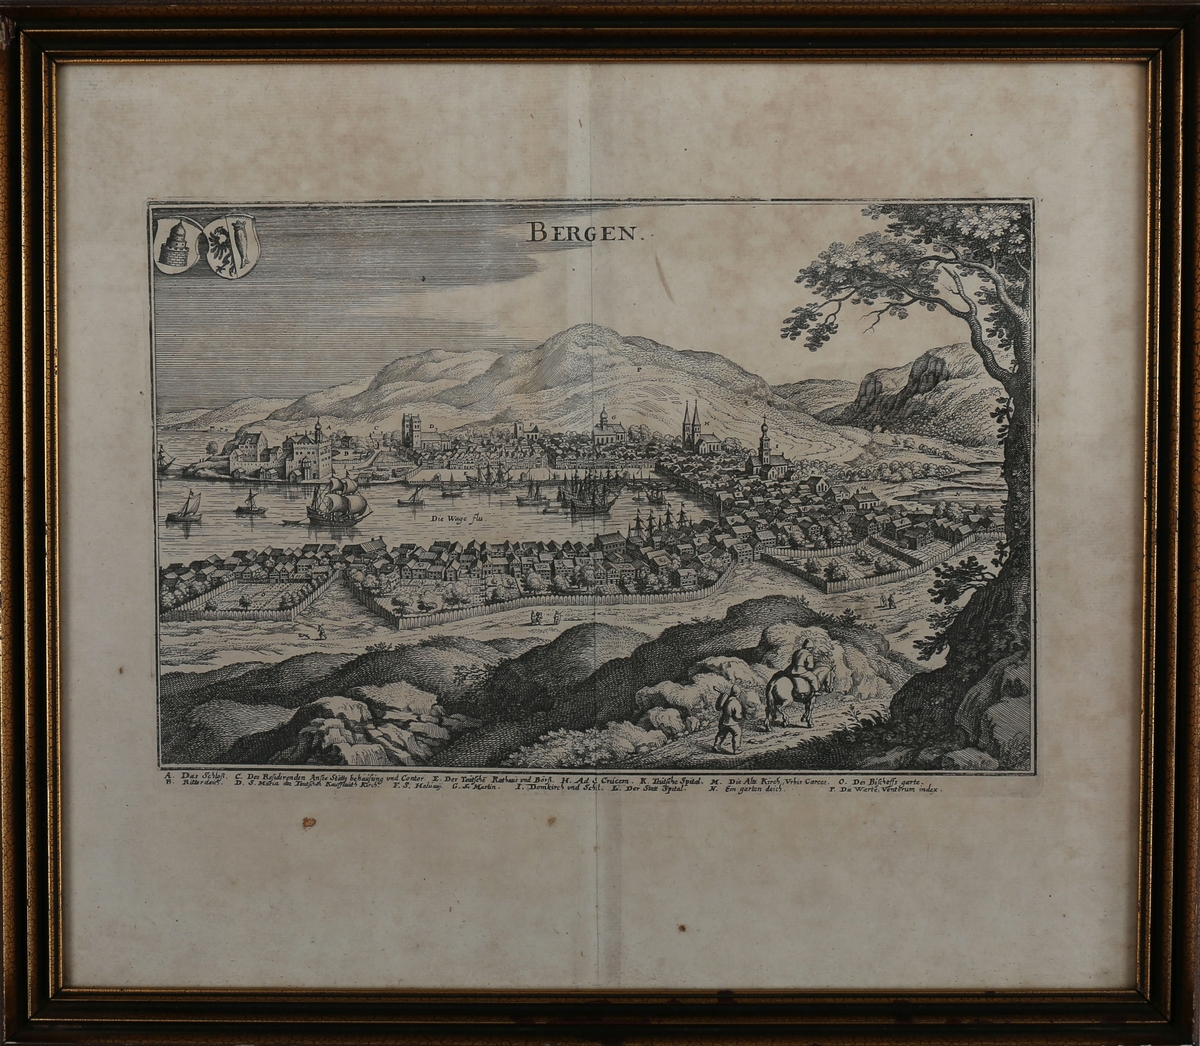 Bergen sett fra vest omtrent fra Klosteret, ca. 1580. På himmelen er det skrevet "Bergen". Denne versjonen av Sholeus-trykket skiller seg fra HMB.00293 blant annet ved at stokkegjerdet er satt opp annerledes og ved at motivet helt i forgrunnen er ulikt.